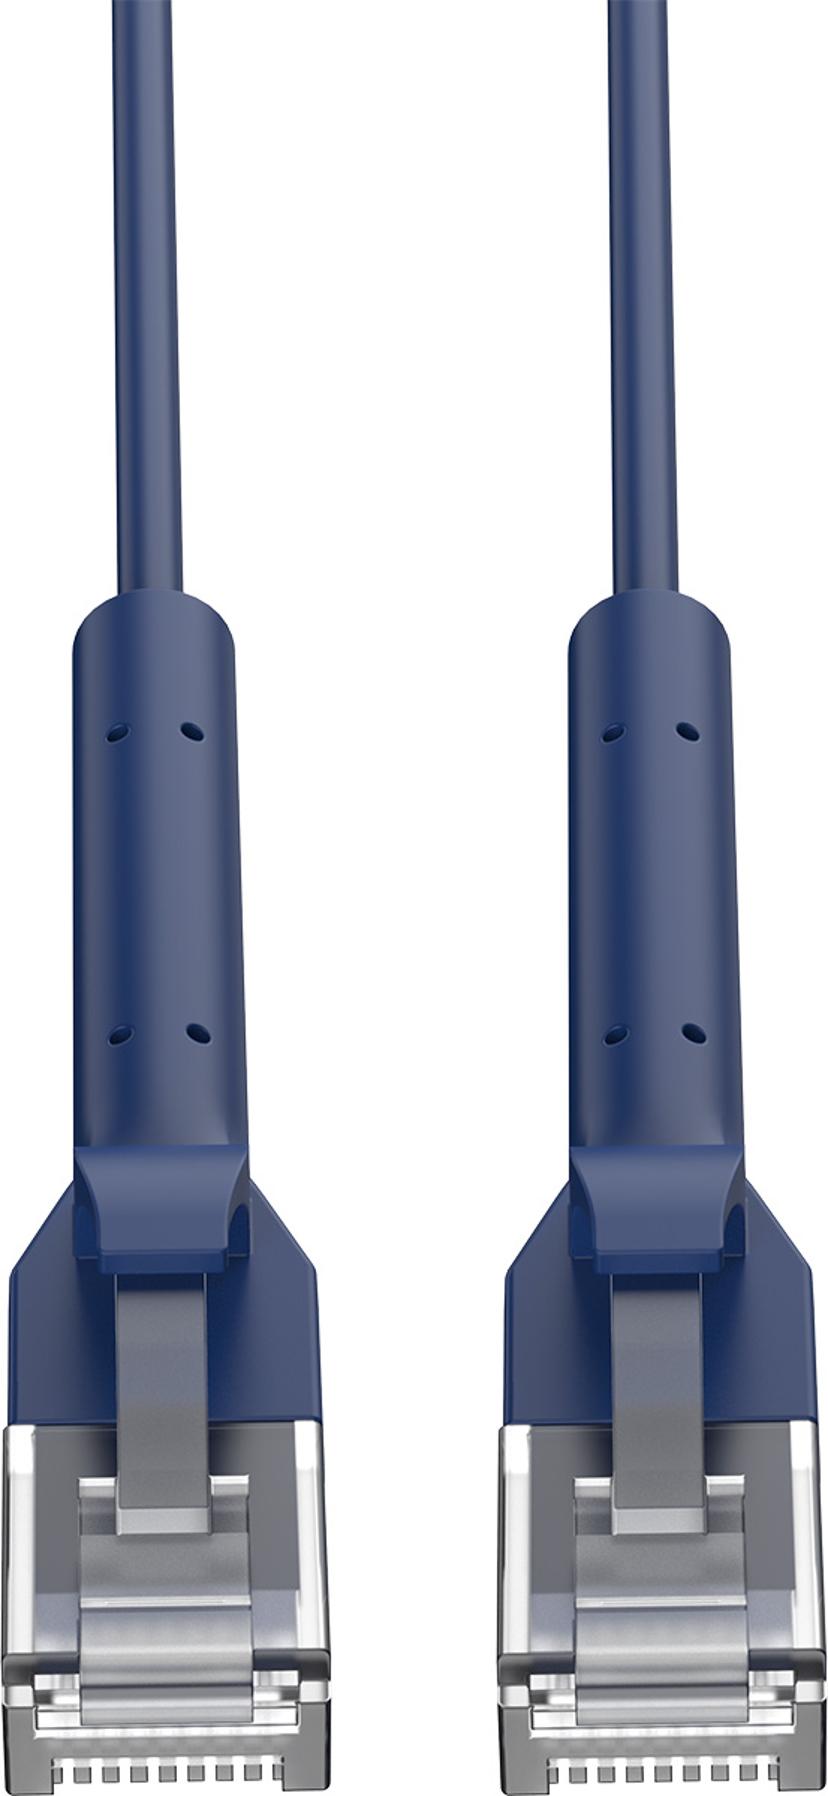 Prokord Ethernet Cat.6 Patch Cable Bendable Rj45 0.1M RJ-45 RJ-45 CAT 6 0.1m Sininen